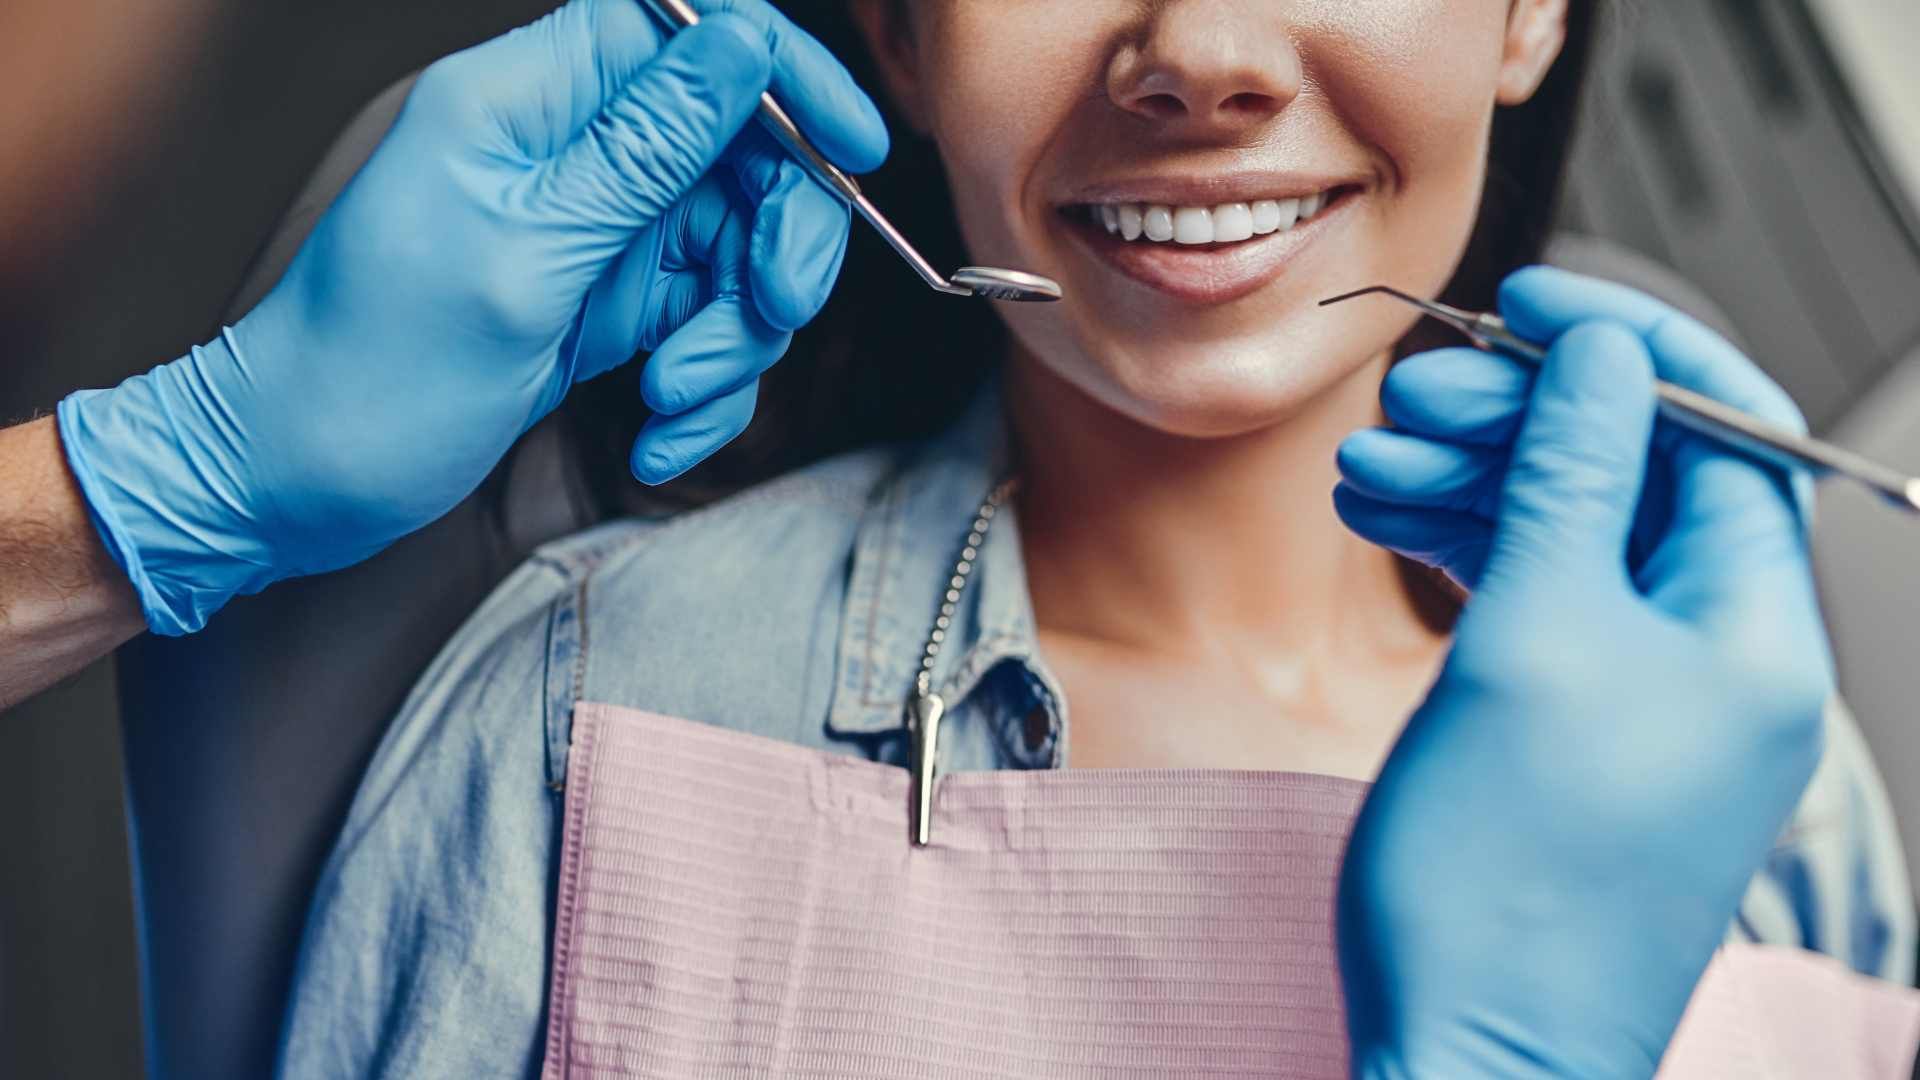 پرکردن دندان دو سطحی با کامپوزیت آمریکایی